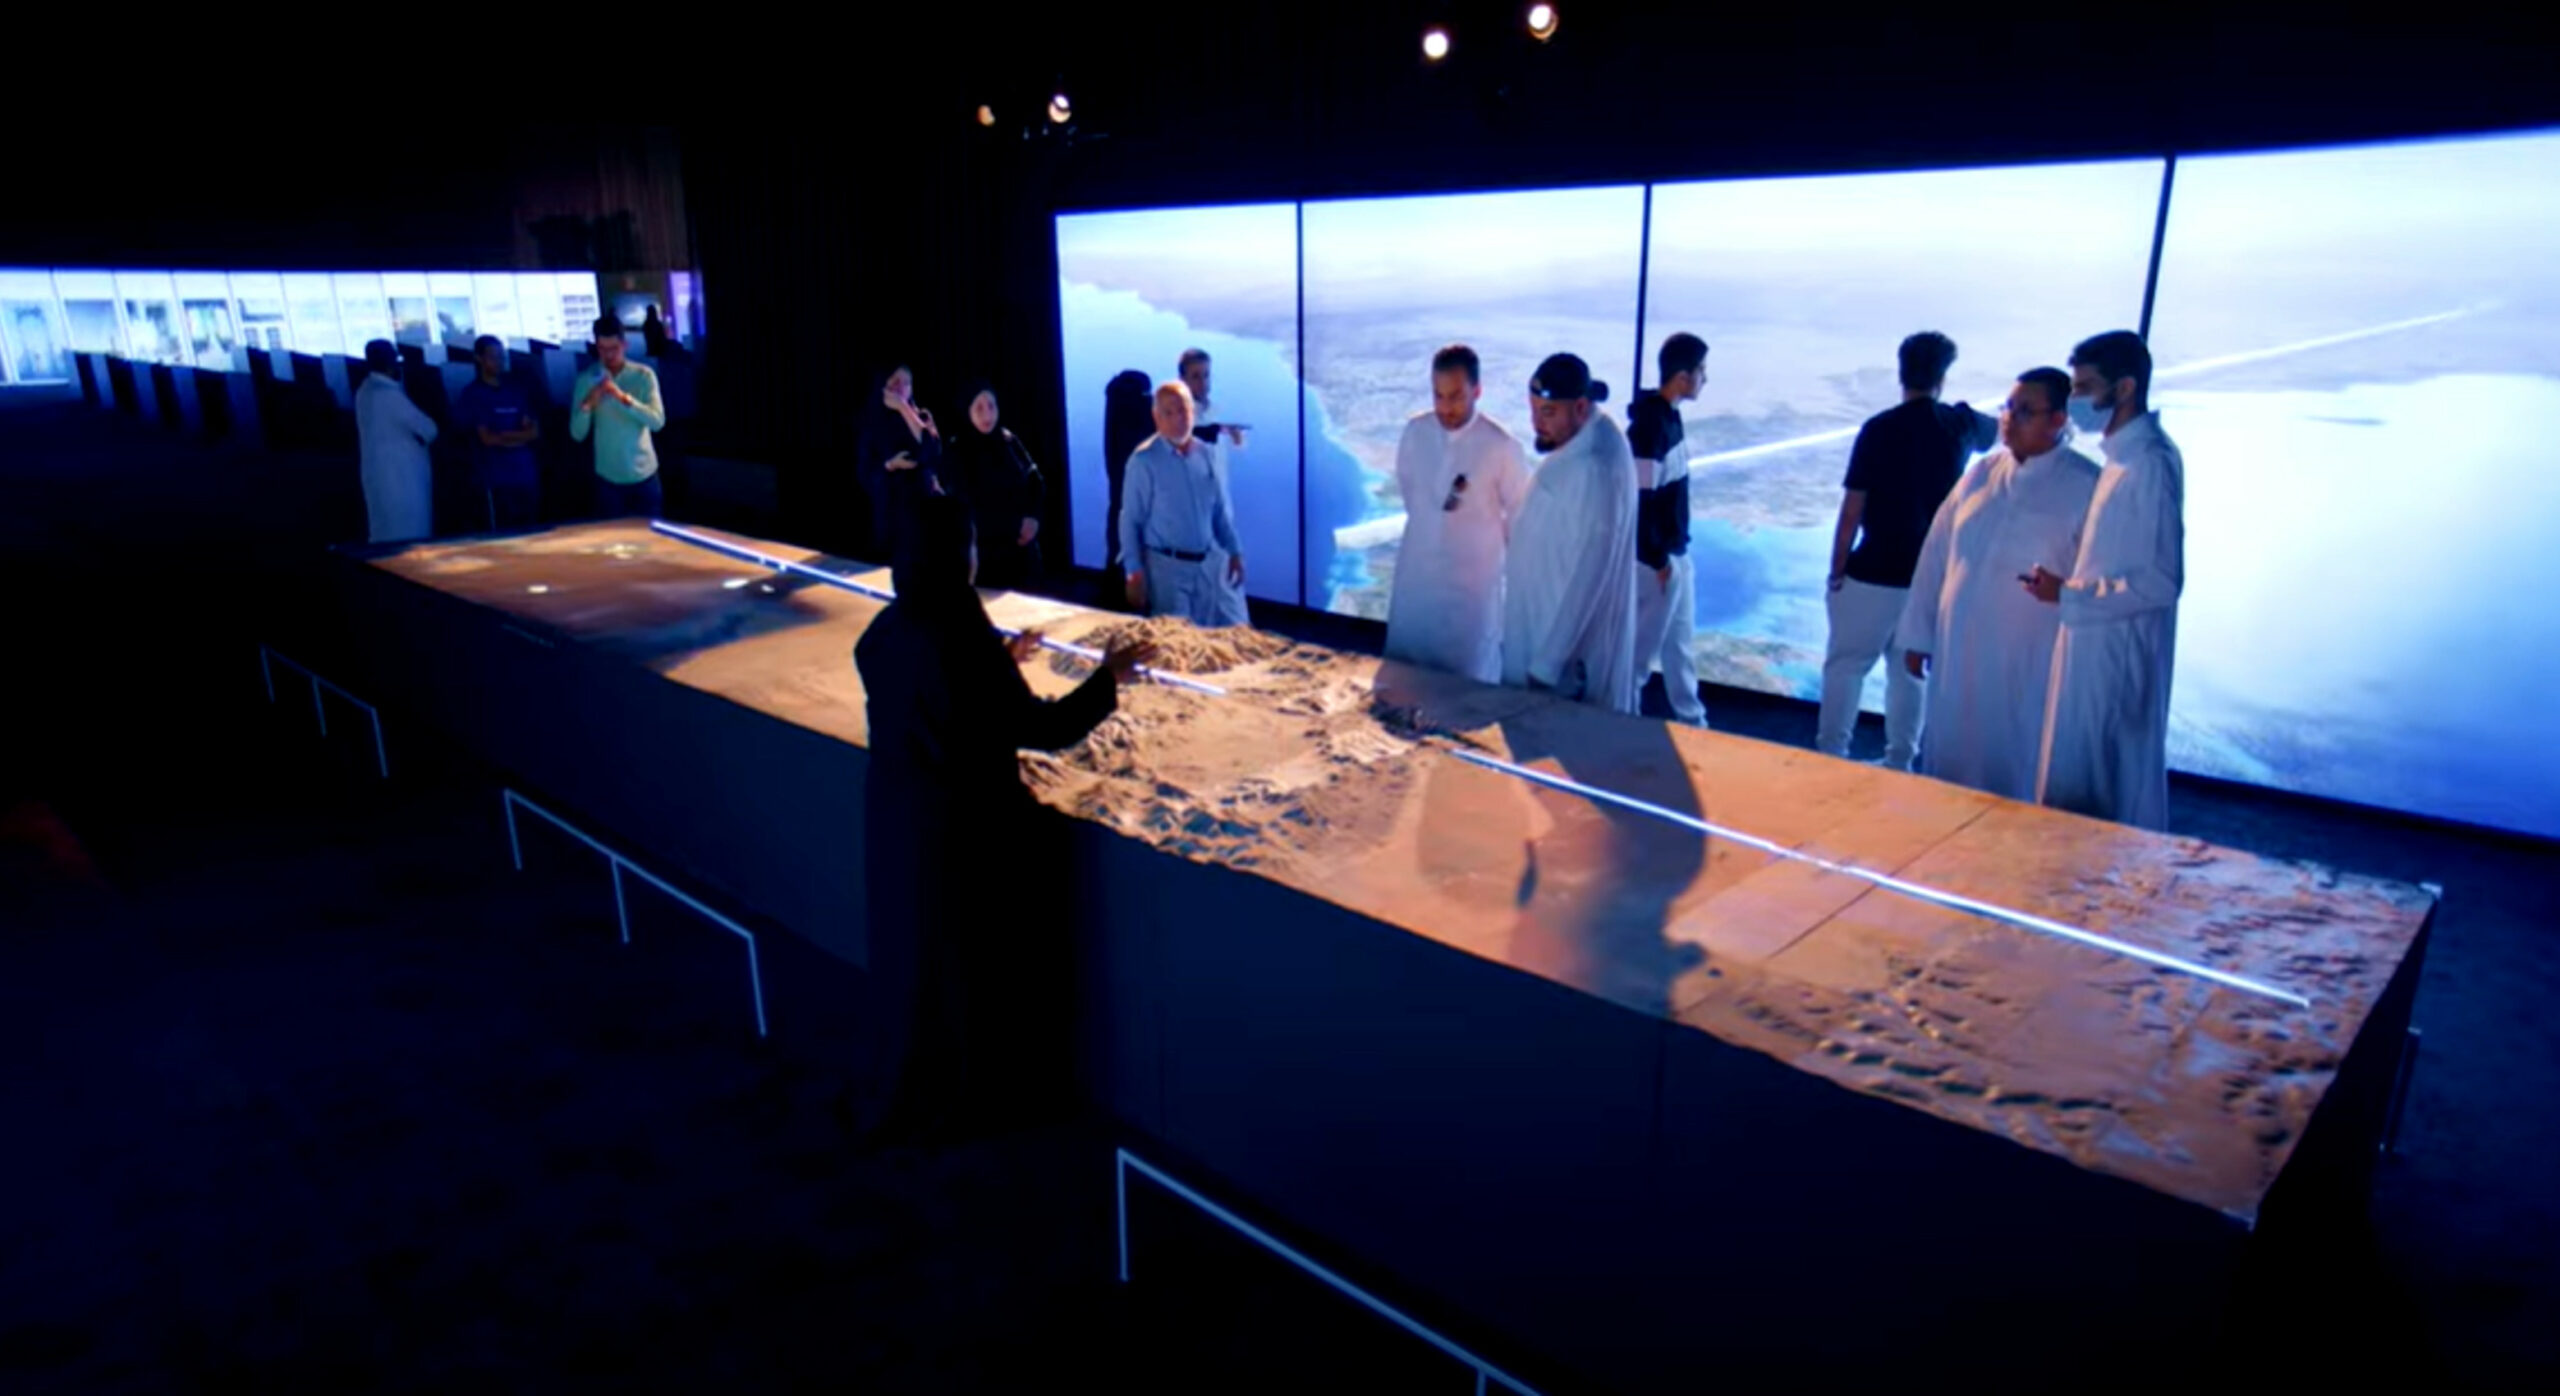 بعض 200,000 من المتوقع أن يحضر الناس معرض The Line Experience في الرياض.